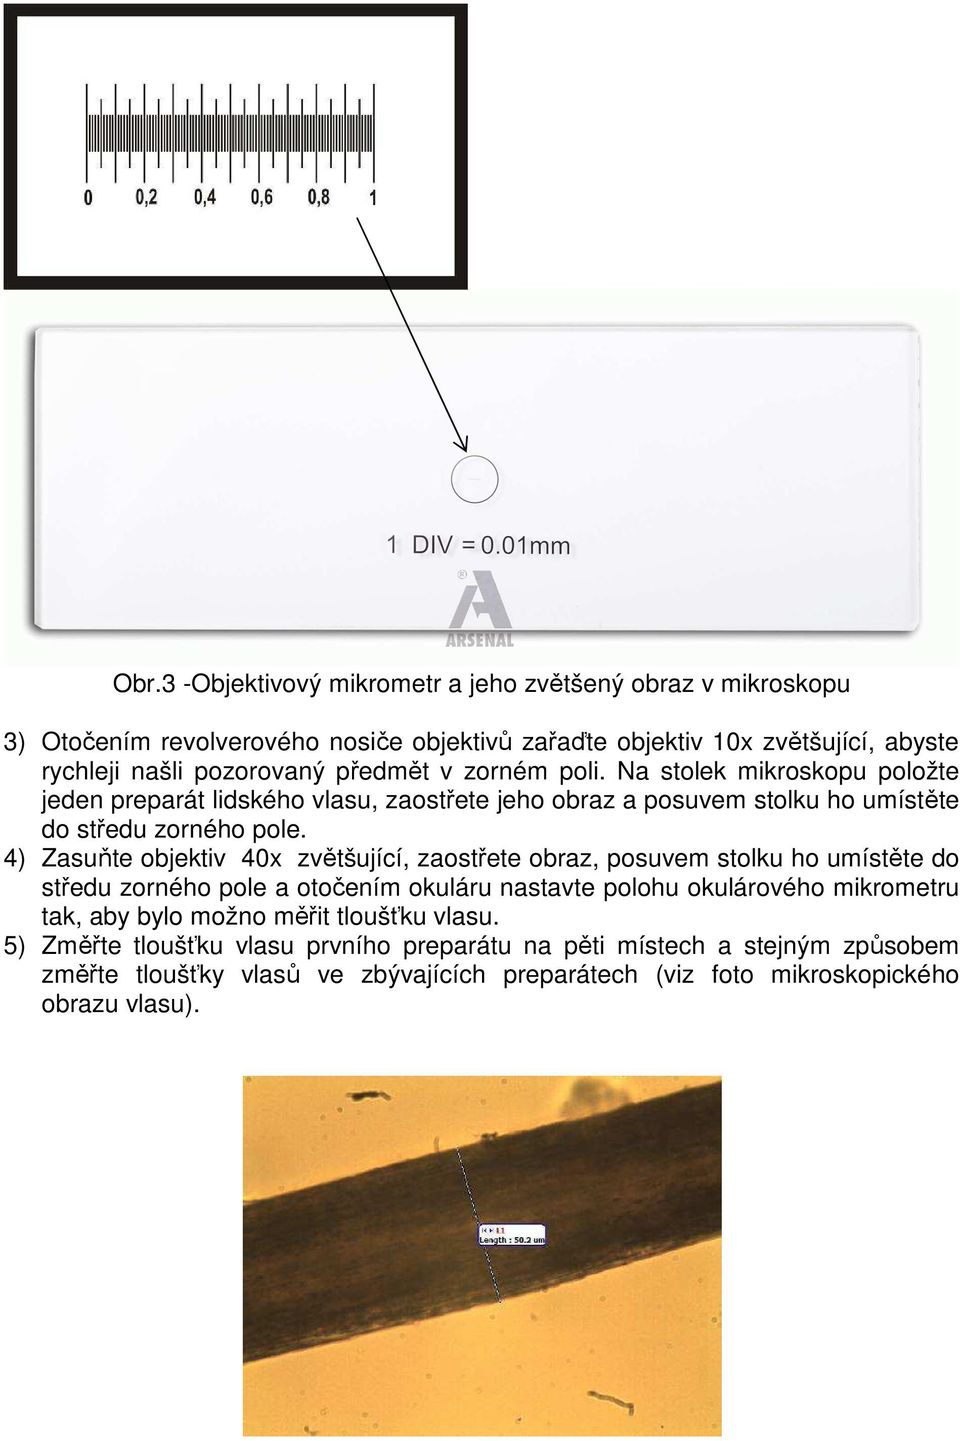 4) Zasuňte objektiv 40x zvětšující, zaostřete obraz, posuvem stolku ho umístěte do středu zorného pole a otočením okuláru nastavte polohu okulárového mikrometru tak, aby bylo